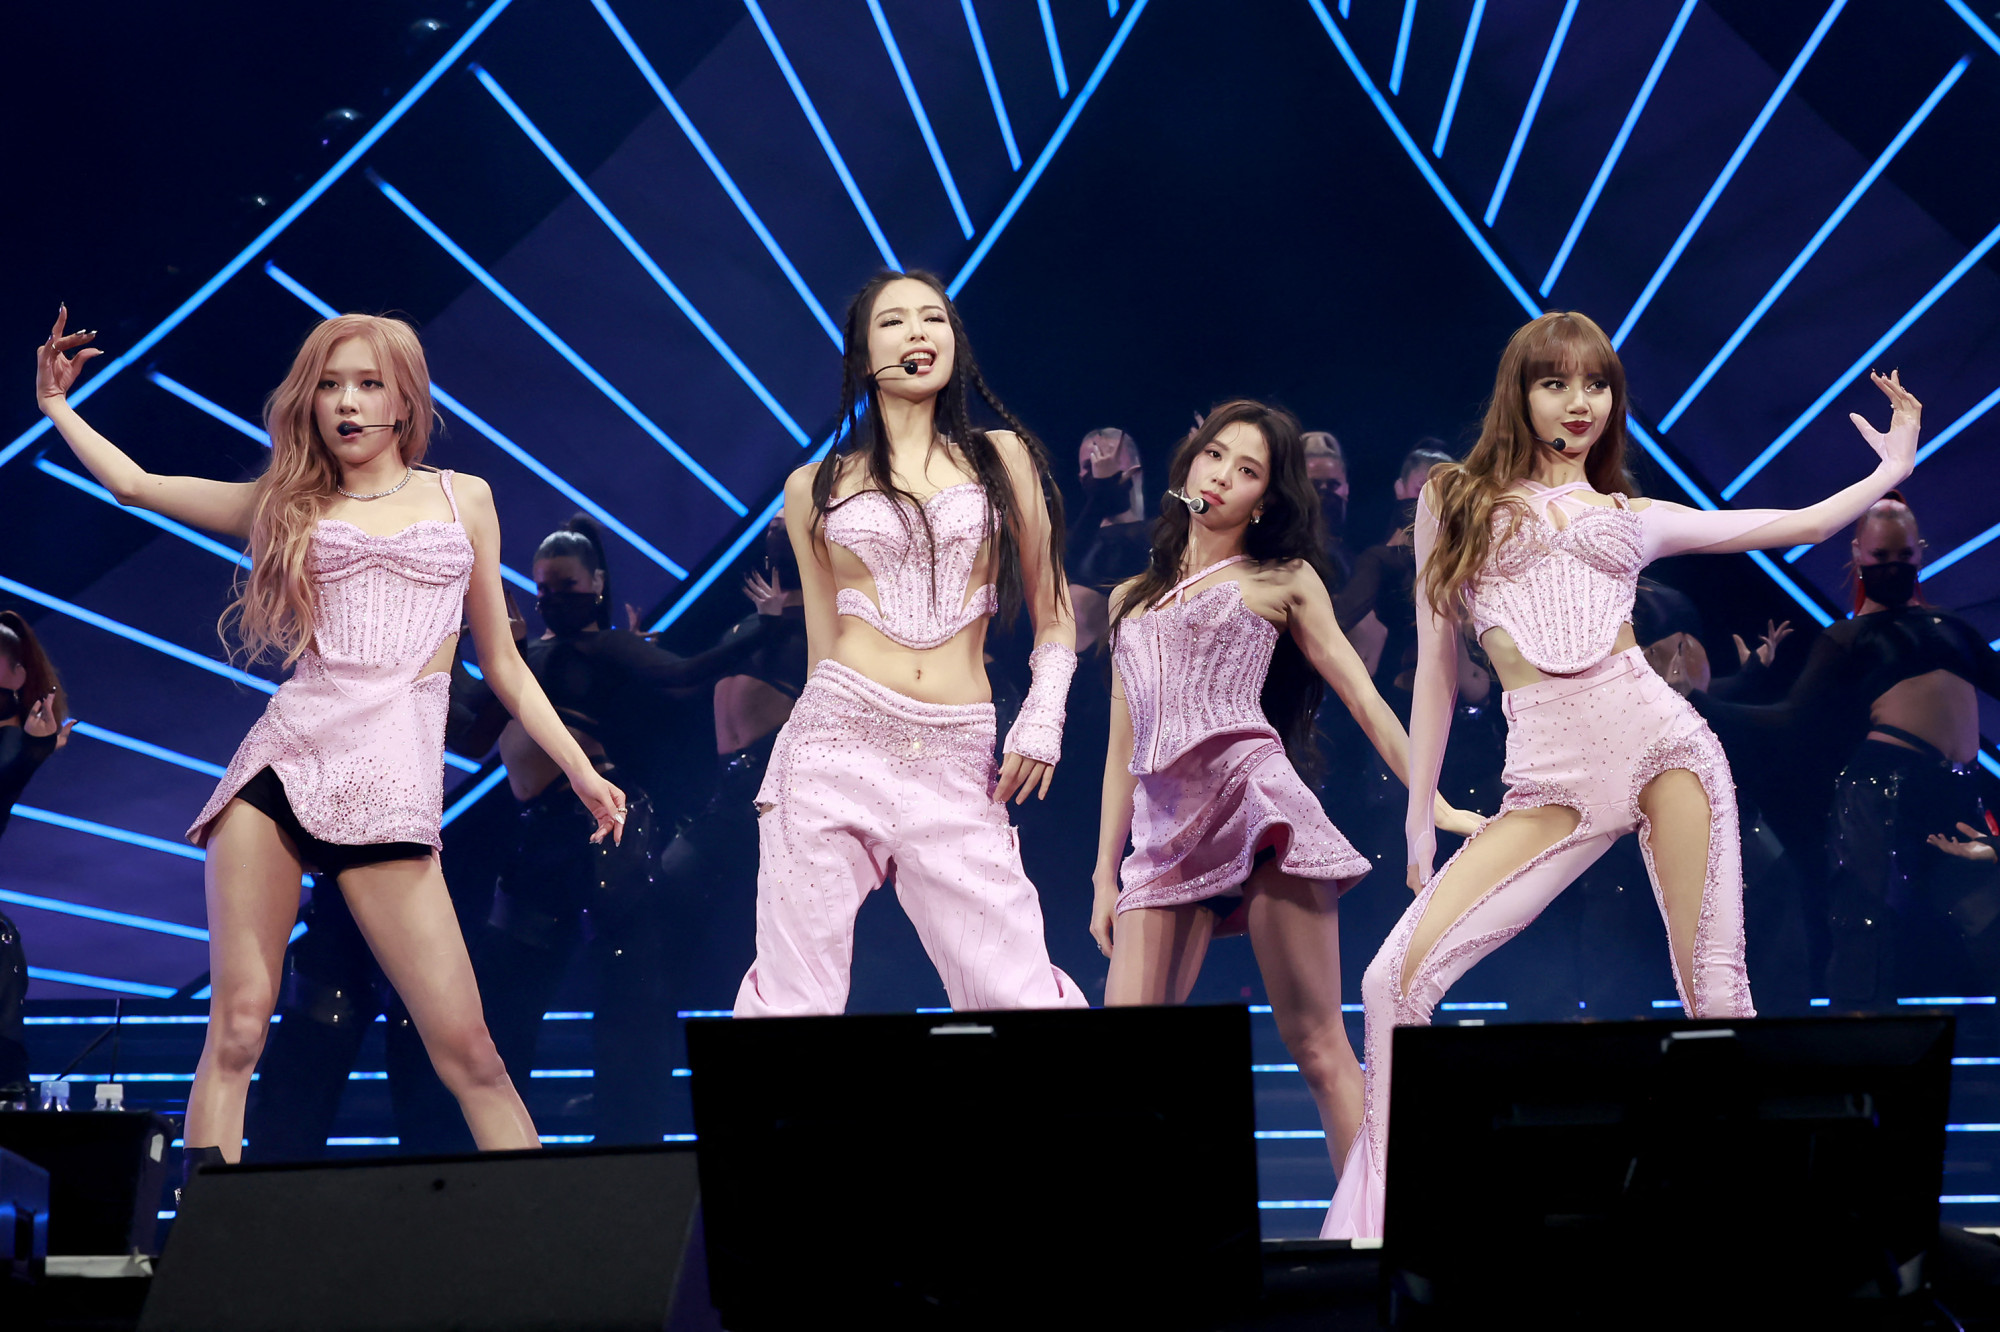 Egy k-pop együttes belefutott ugyanabba a geopolitikai csapdába, mint a Barbie film